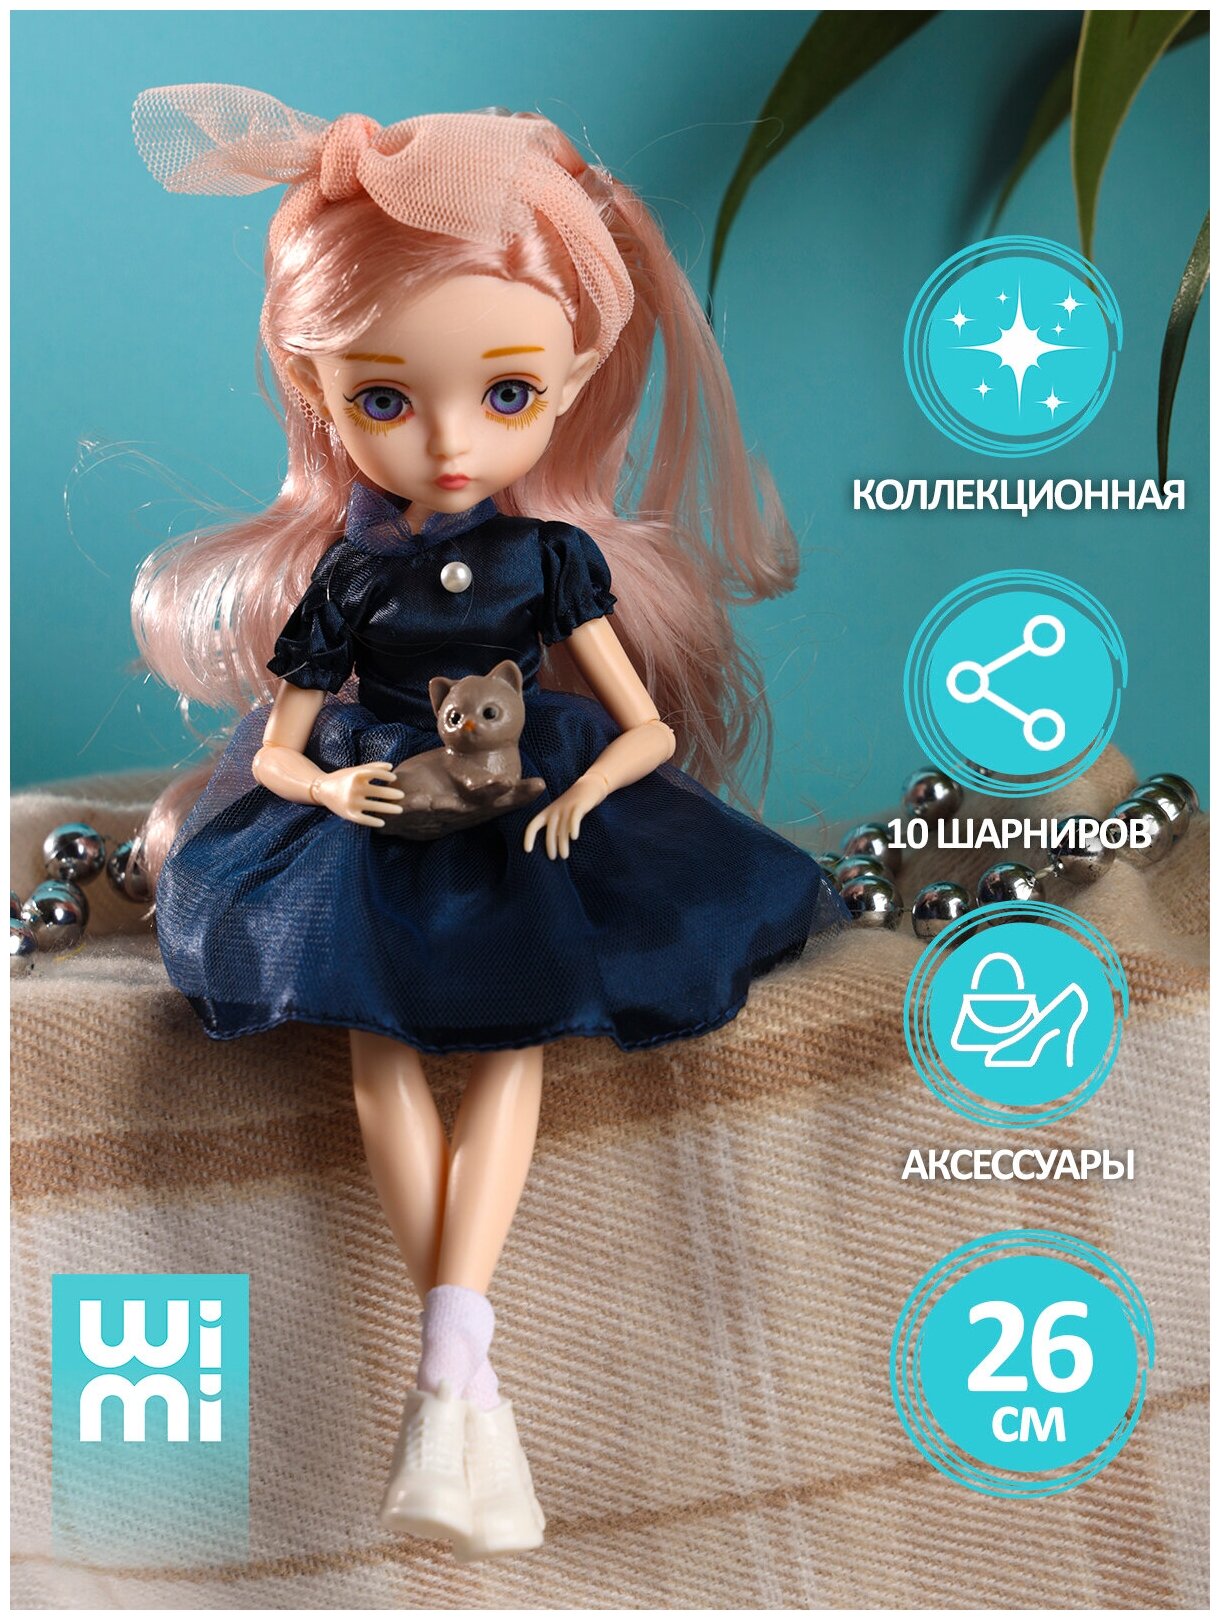 Коллекционная шарнирная куколка WiMi с большими глазами в одежде с аксессуарами и питомцем принцесса с длинными волосами для девочек 26 см